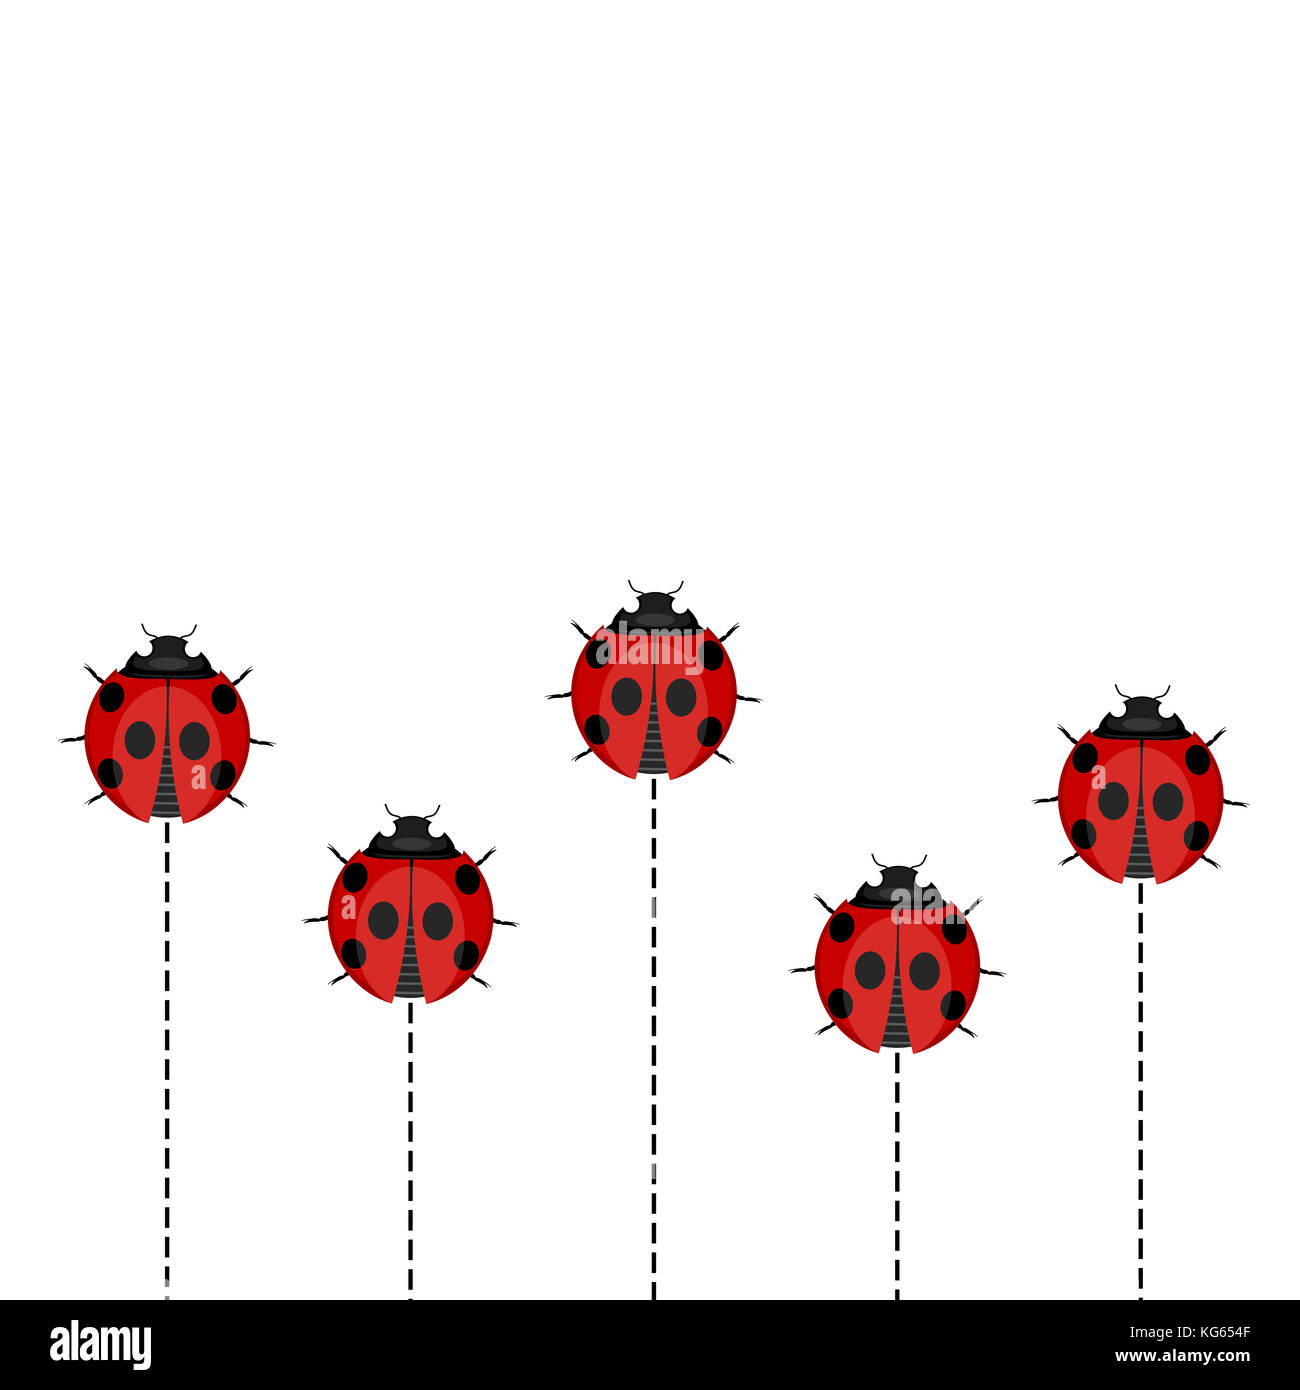 Ladybug Pattern on White Background Stock Photo